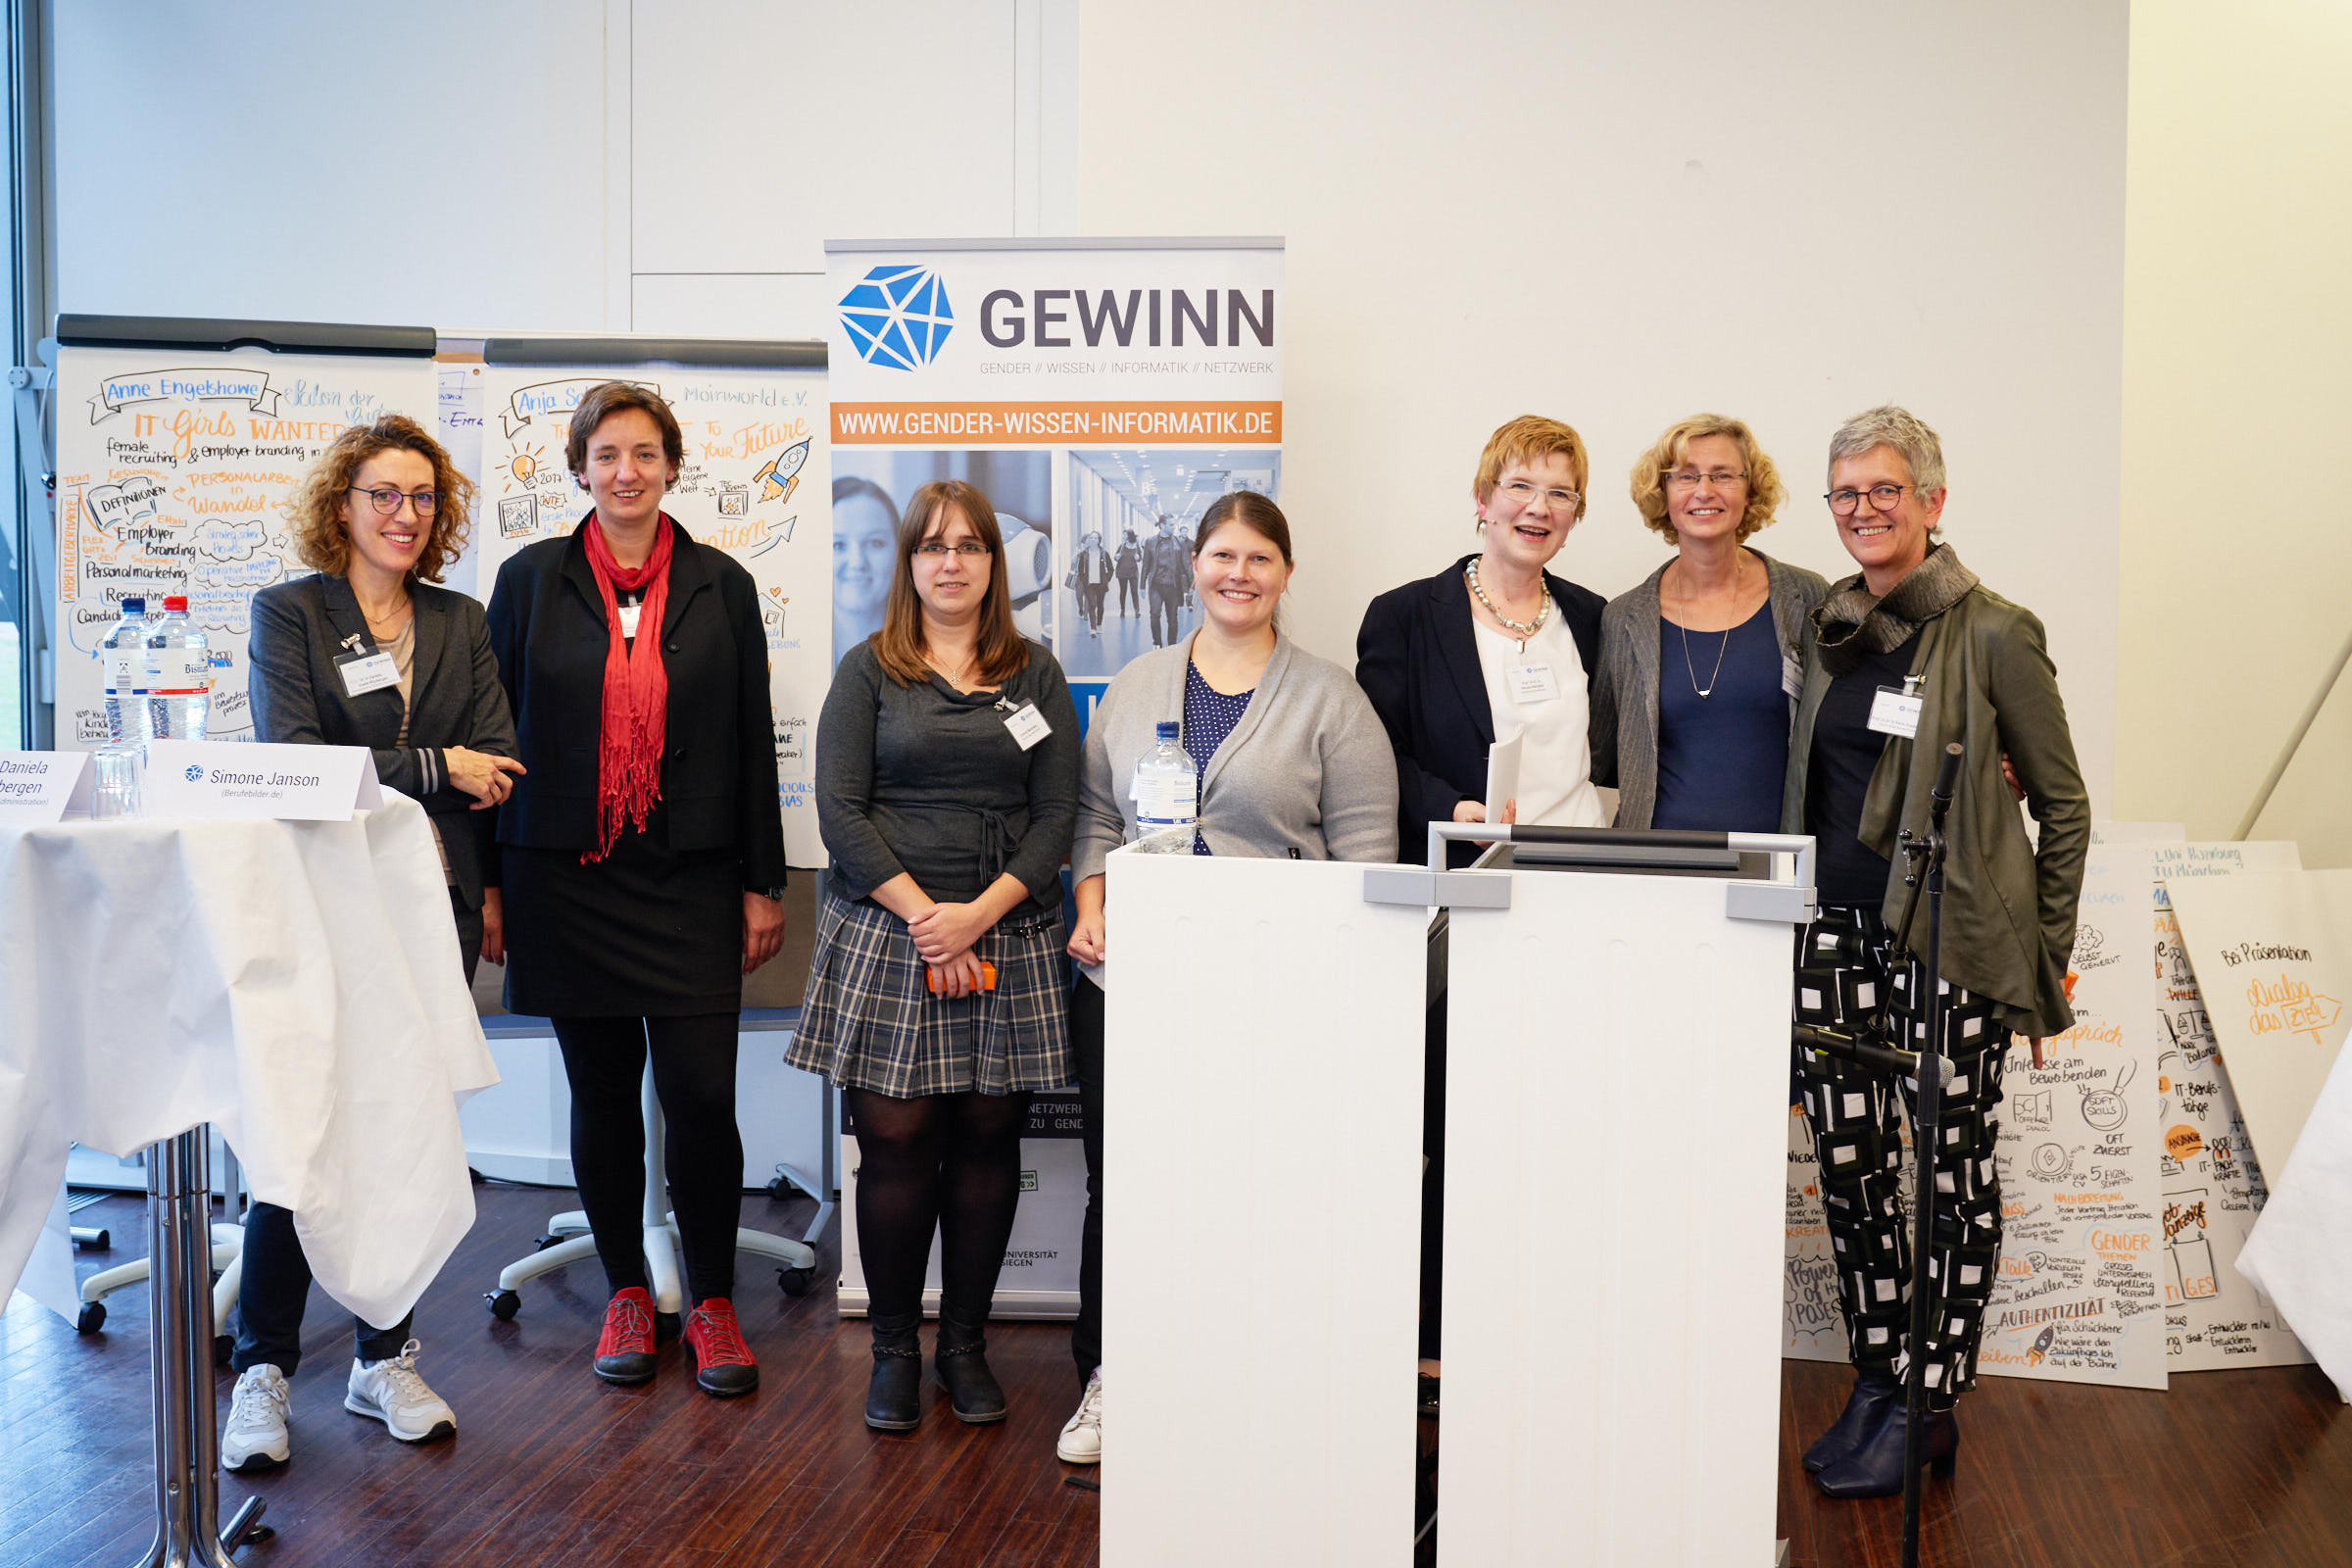 Sieben Referentinnen stehen vor dem Banner des Projekts "GEWINN".